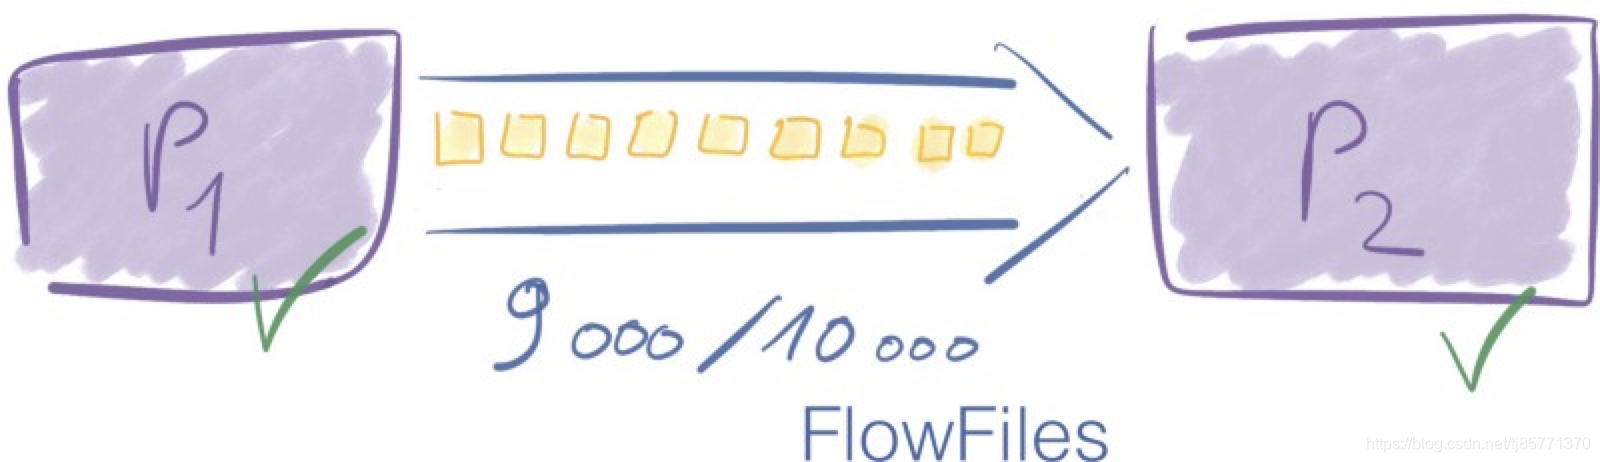 连接器中的FlowFile数返回到阈值以下。流控制器(Flow Controller)再次调度处理器P1